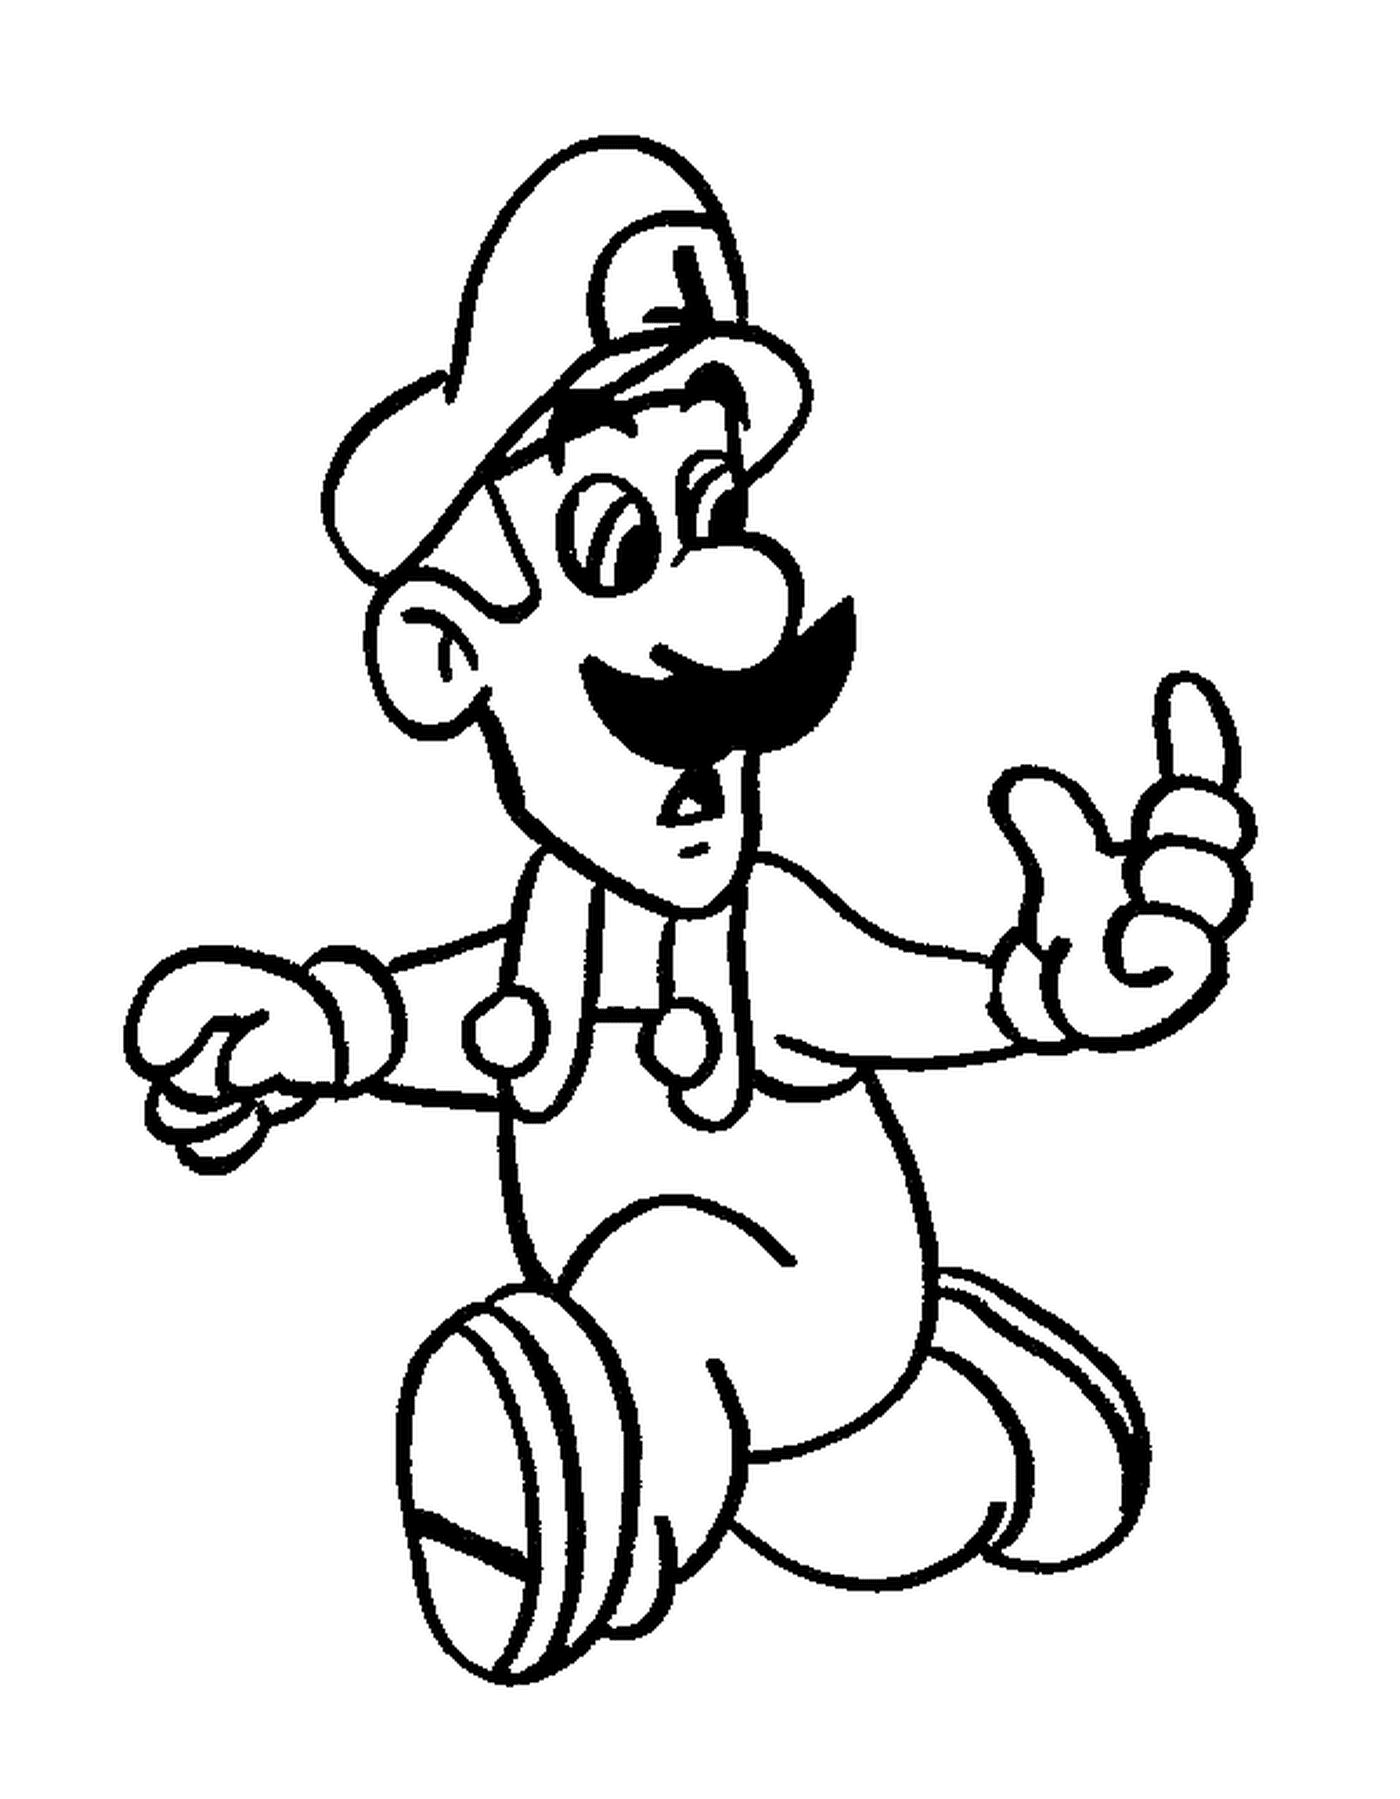  Luigi, a man with a mustache 